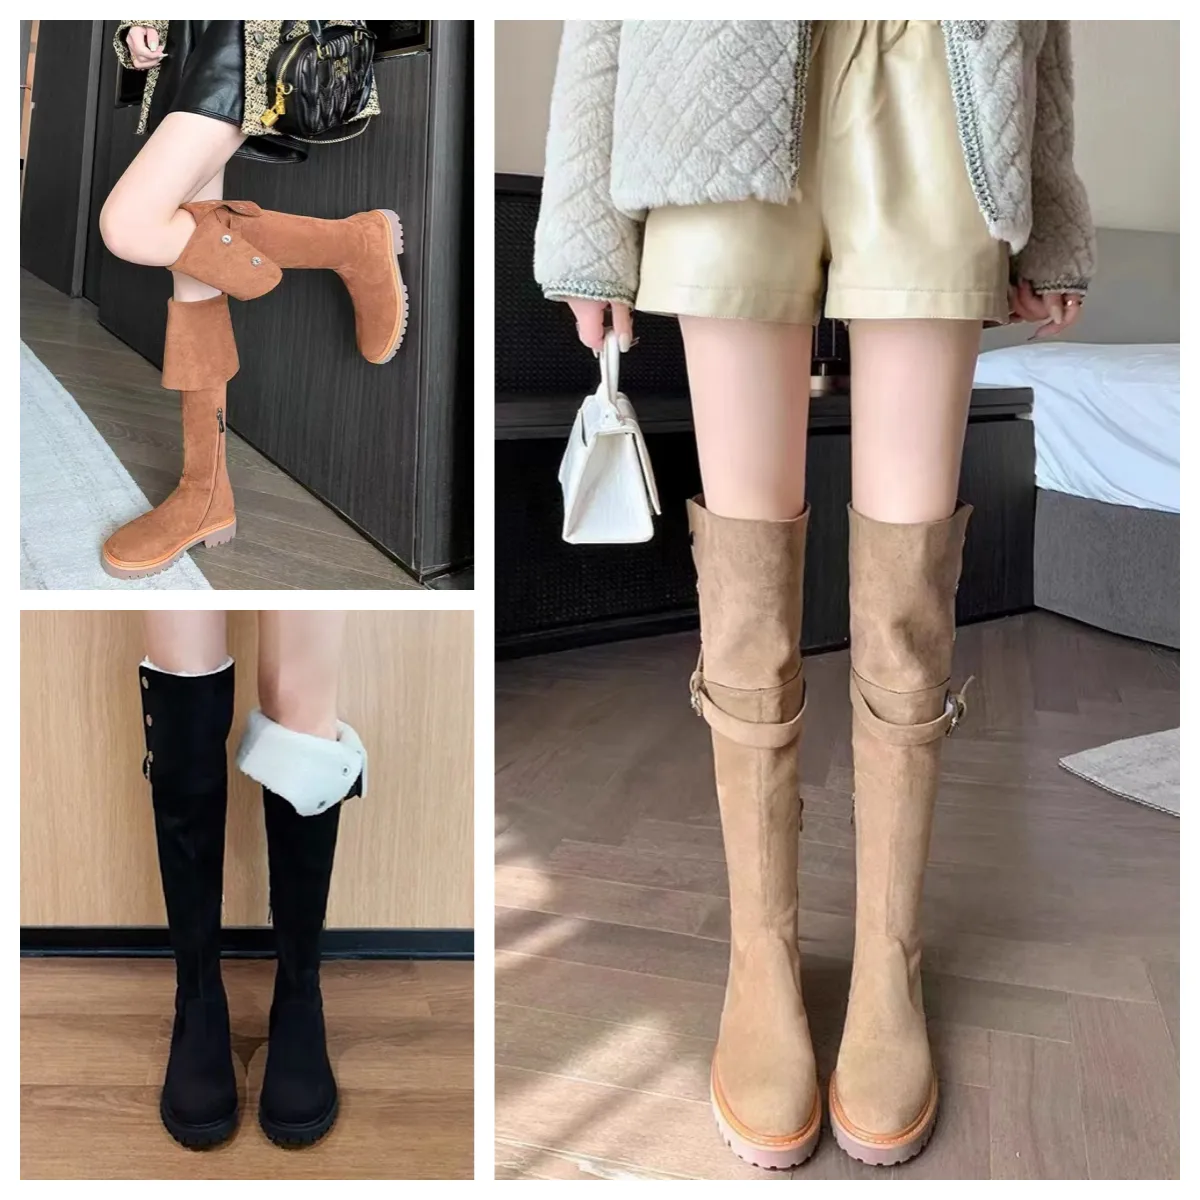 Bottes d'hiver de mode femmes bottes au genou botte noir kaki cuir sur-genou botte fête bottes plates bottines de neige marron foncé talon épais